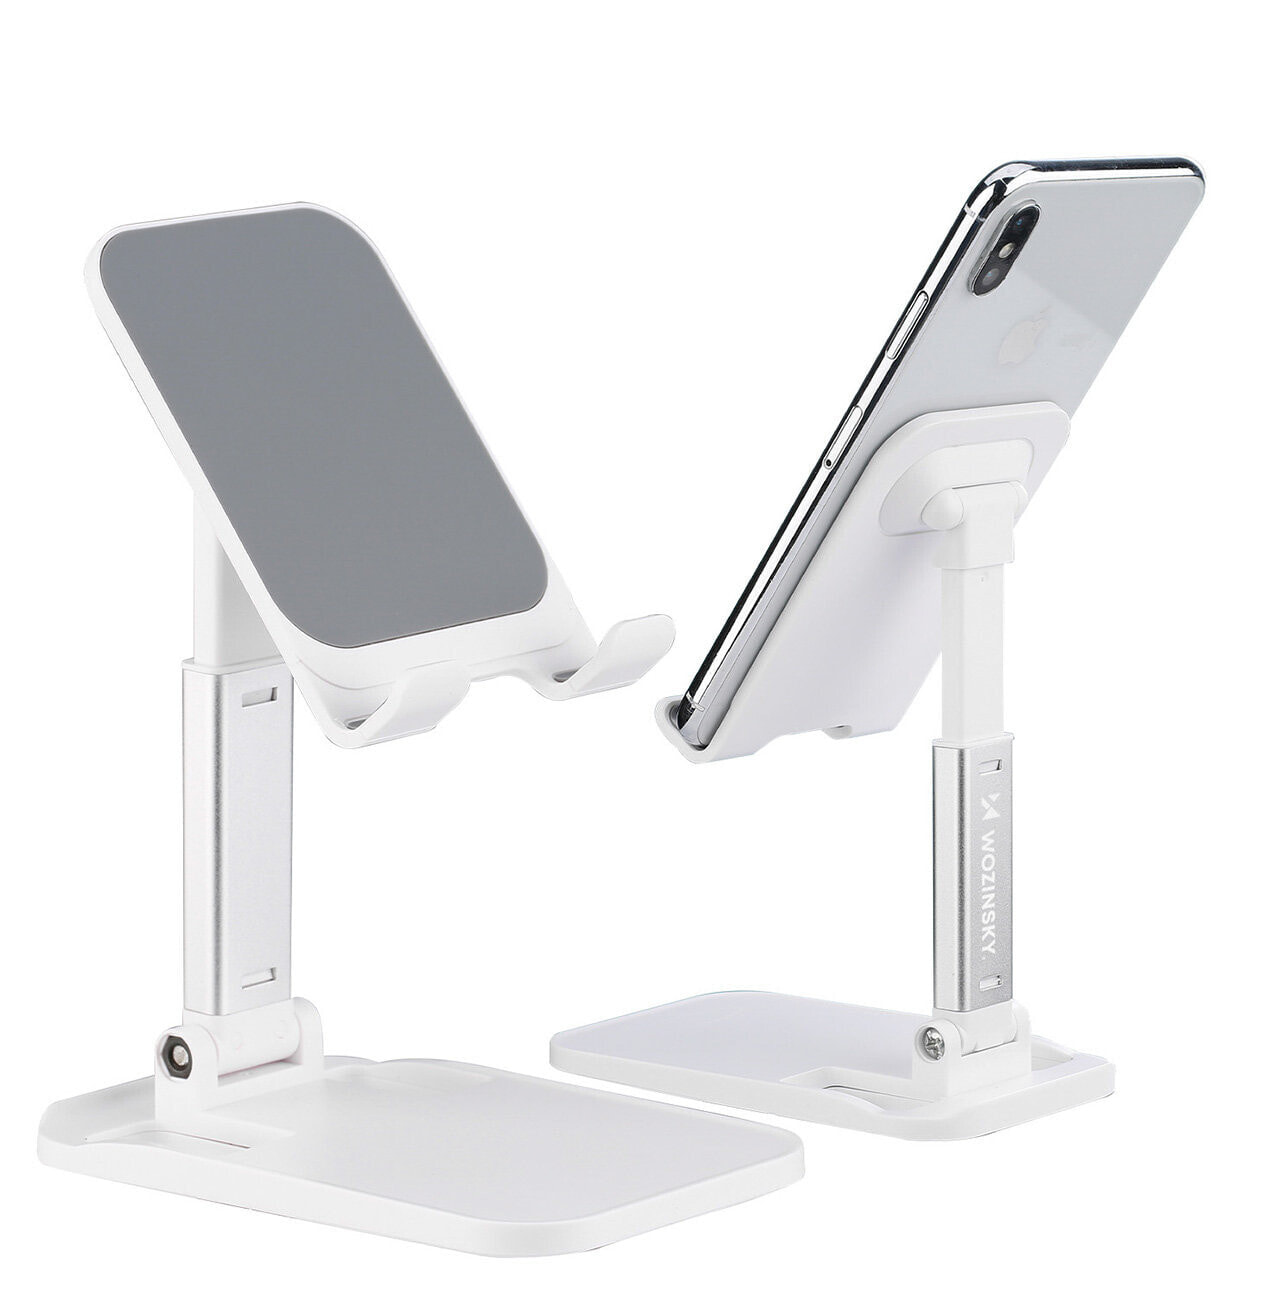 Stojak podstawka składana na telefon tablet 4-8'' na biurko biały